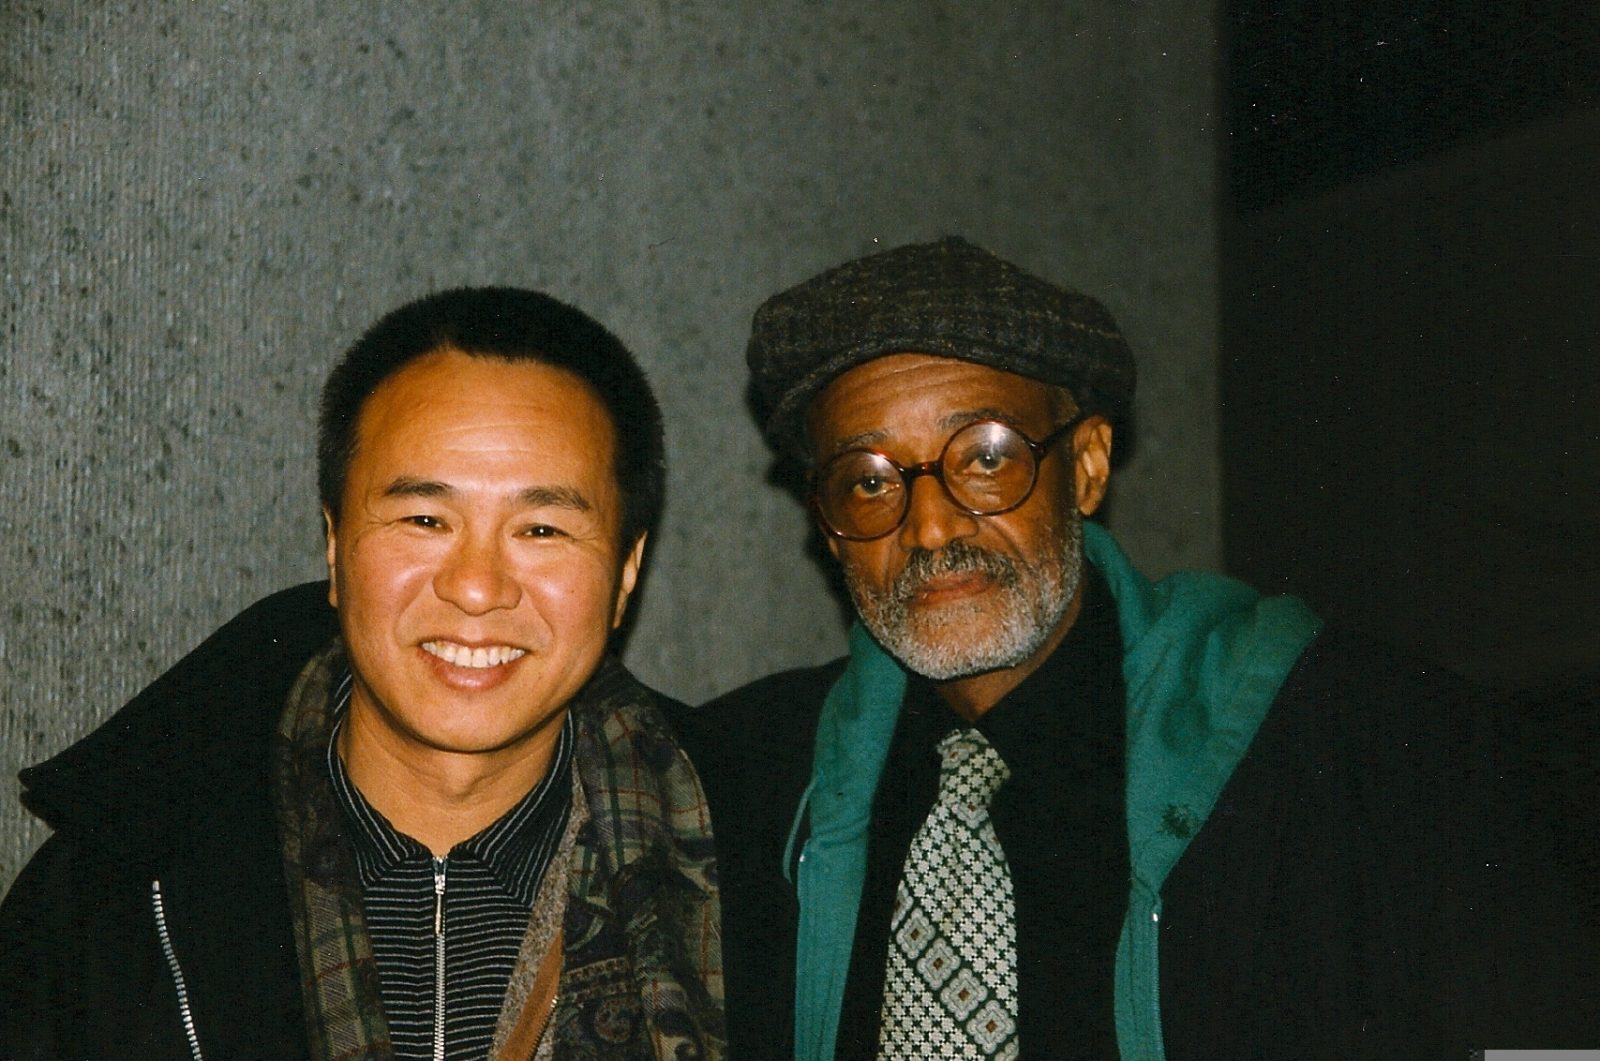 1998 - Hous Hsiao-hsien, Melvin van Peebles